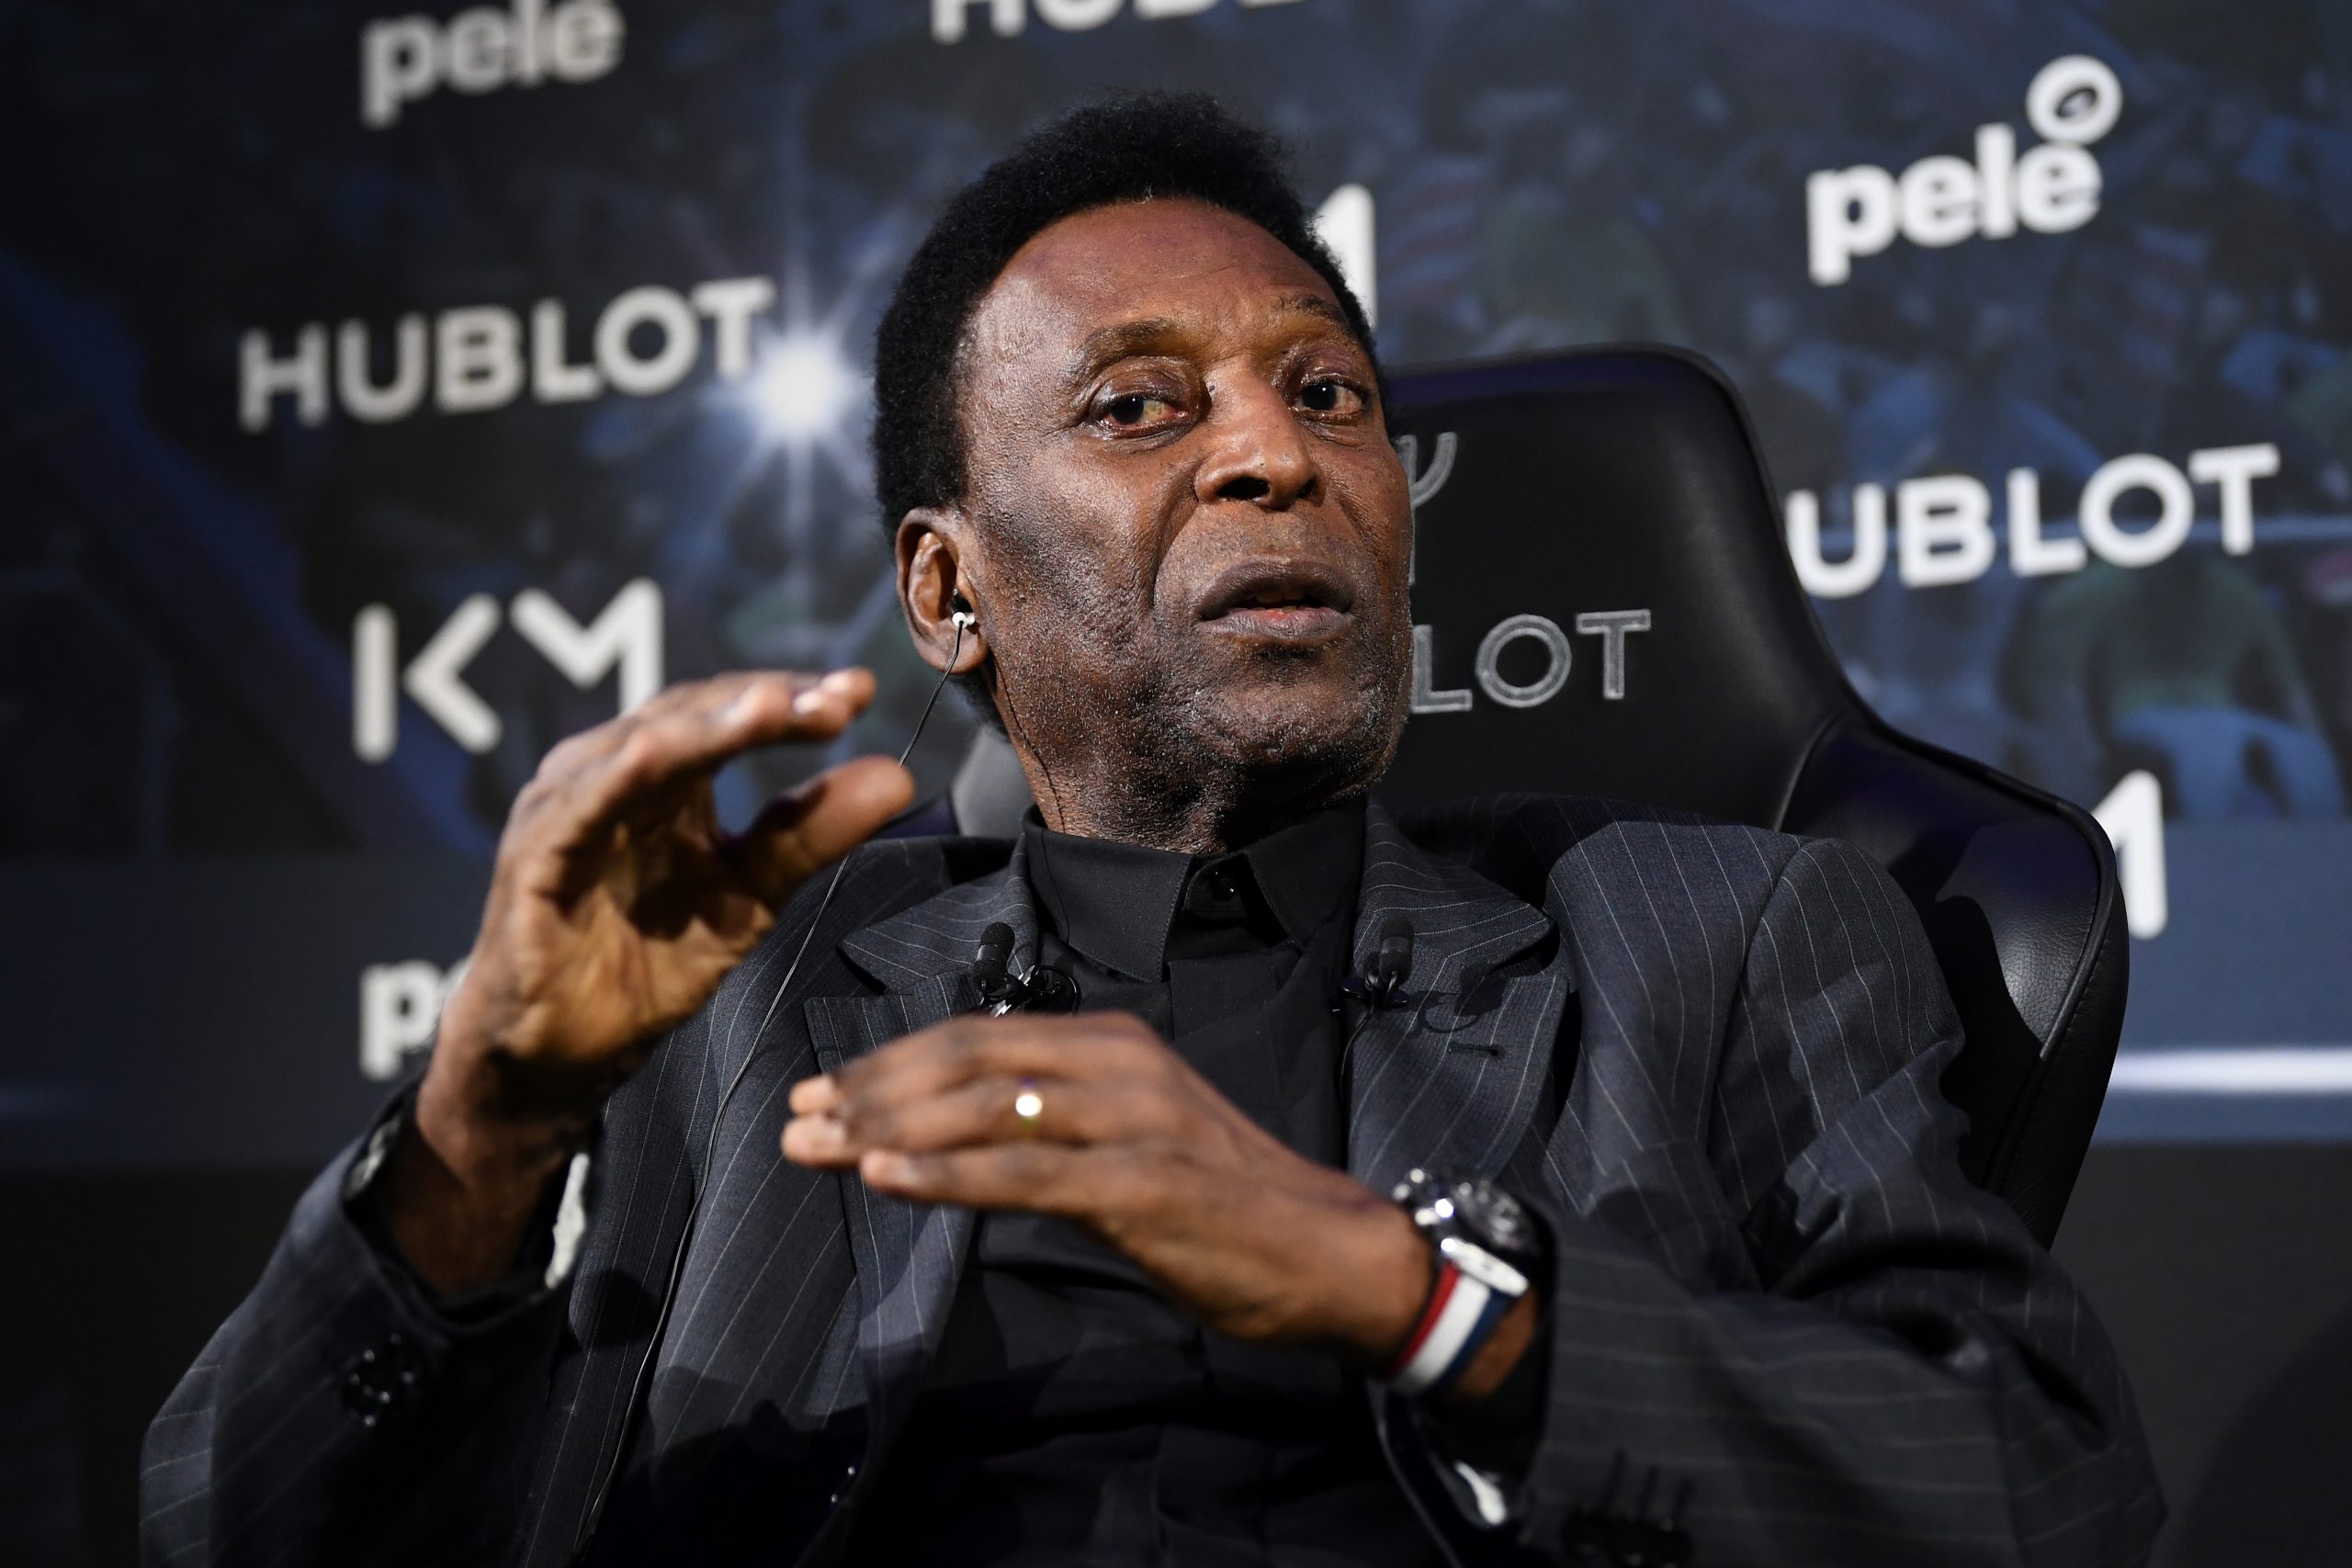 Netflix lanza nuevo documental sobre Pelé – En Segundos Panama